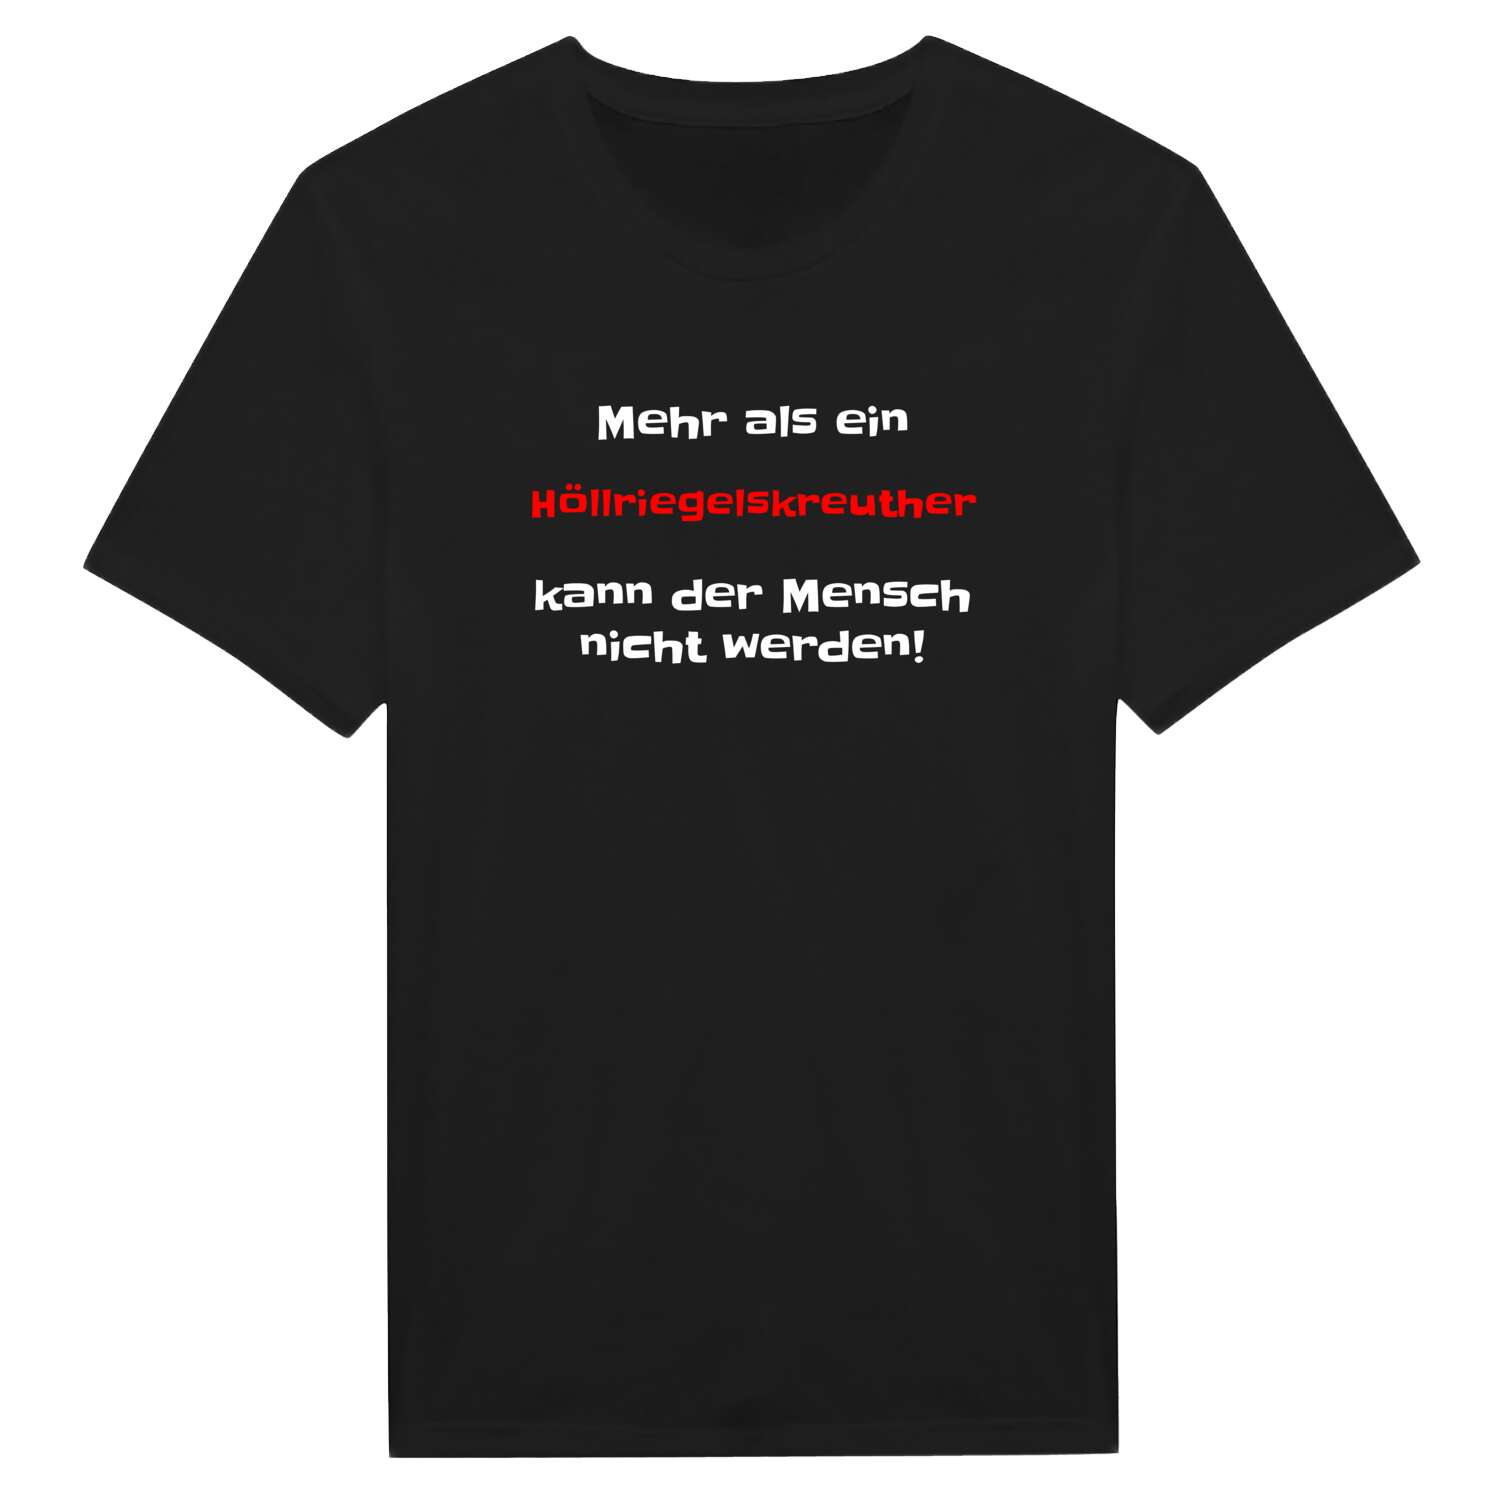 Höllriegelskreuth T-Shirt »Mehr als ein«